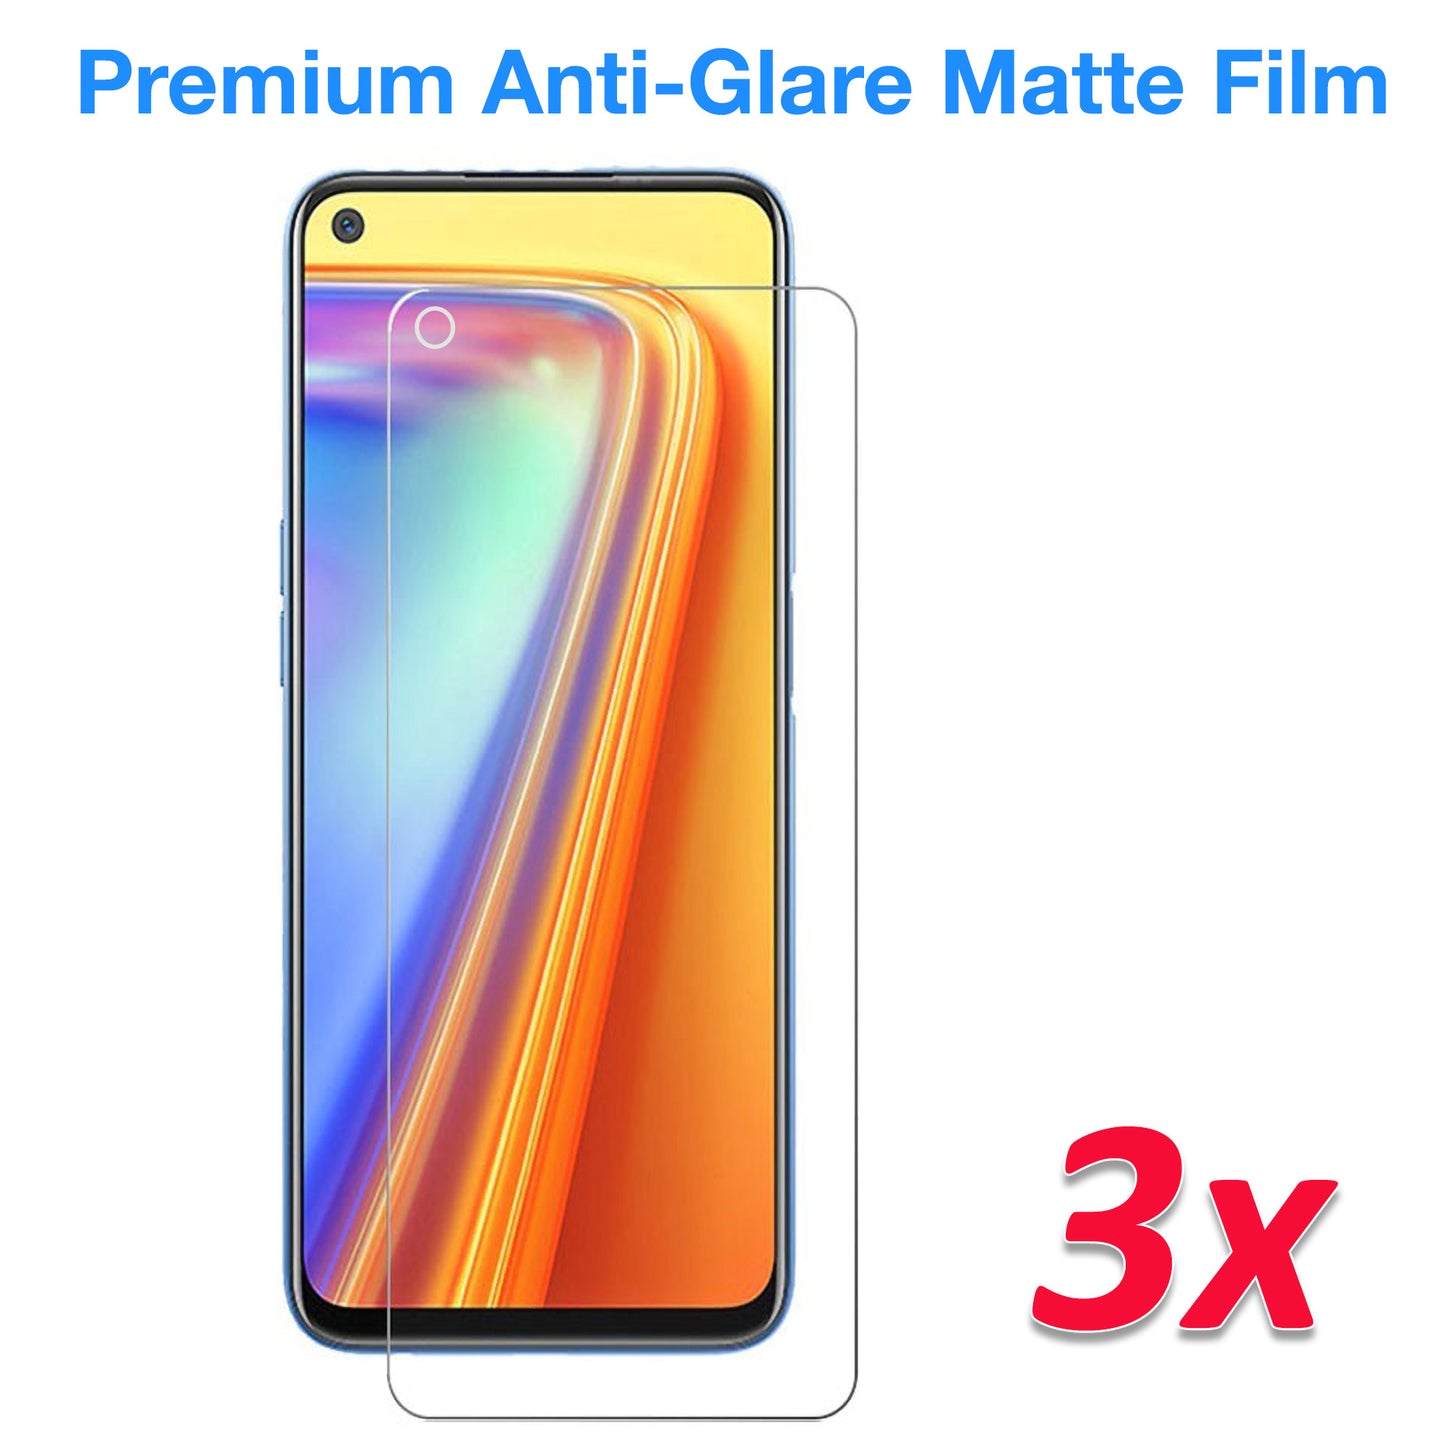 [3 Pack] MEZON Realme 7 5G Anti-Glare Matte Screen Protector Case Friendly Film (Realme 7 5G, Matte)